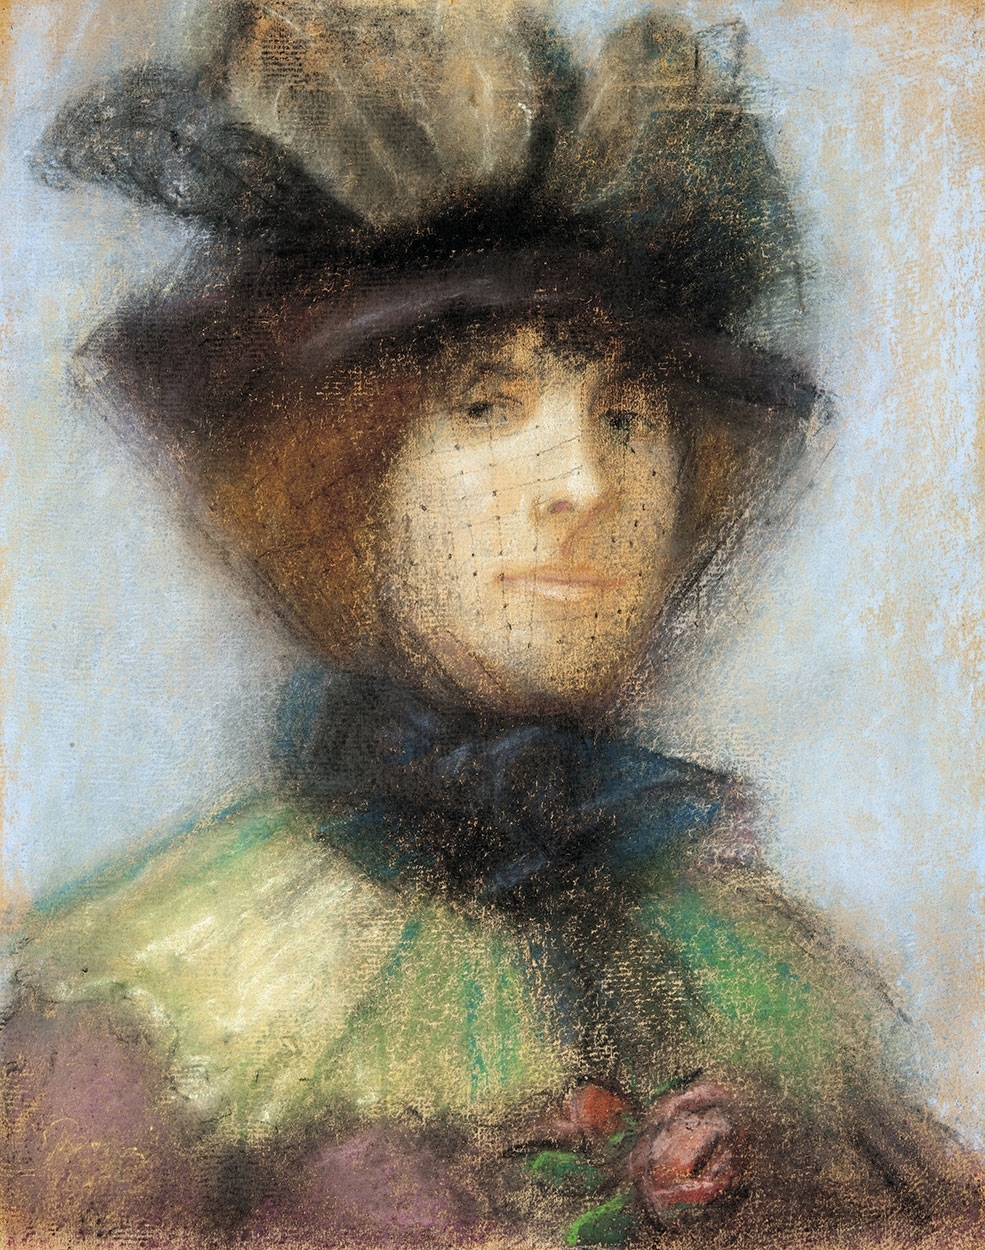 Rippl-Rónai József (1861-1927) Parisian Woman with Veil, 1889